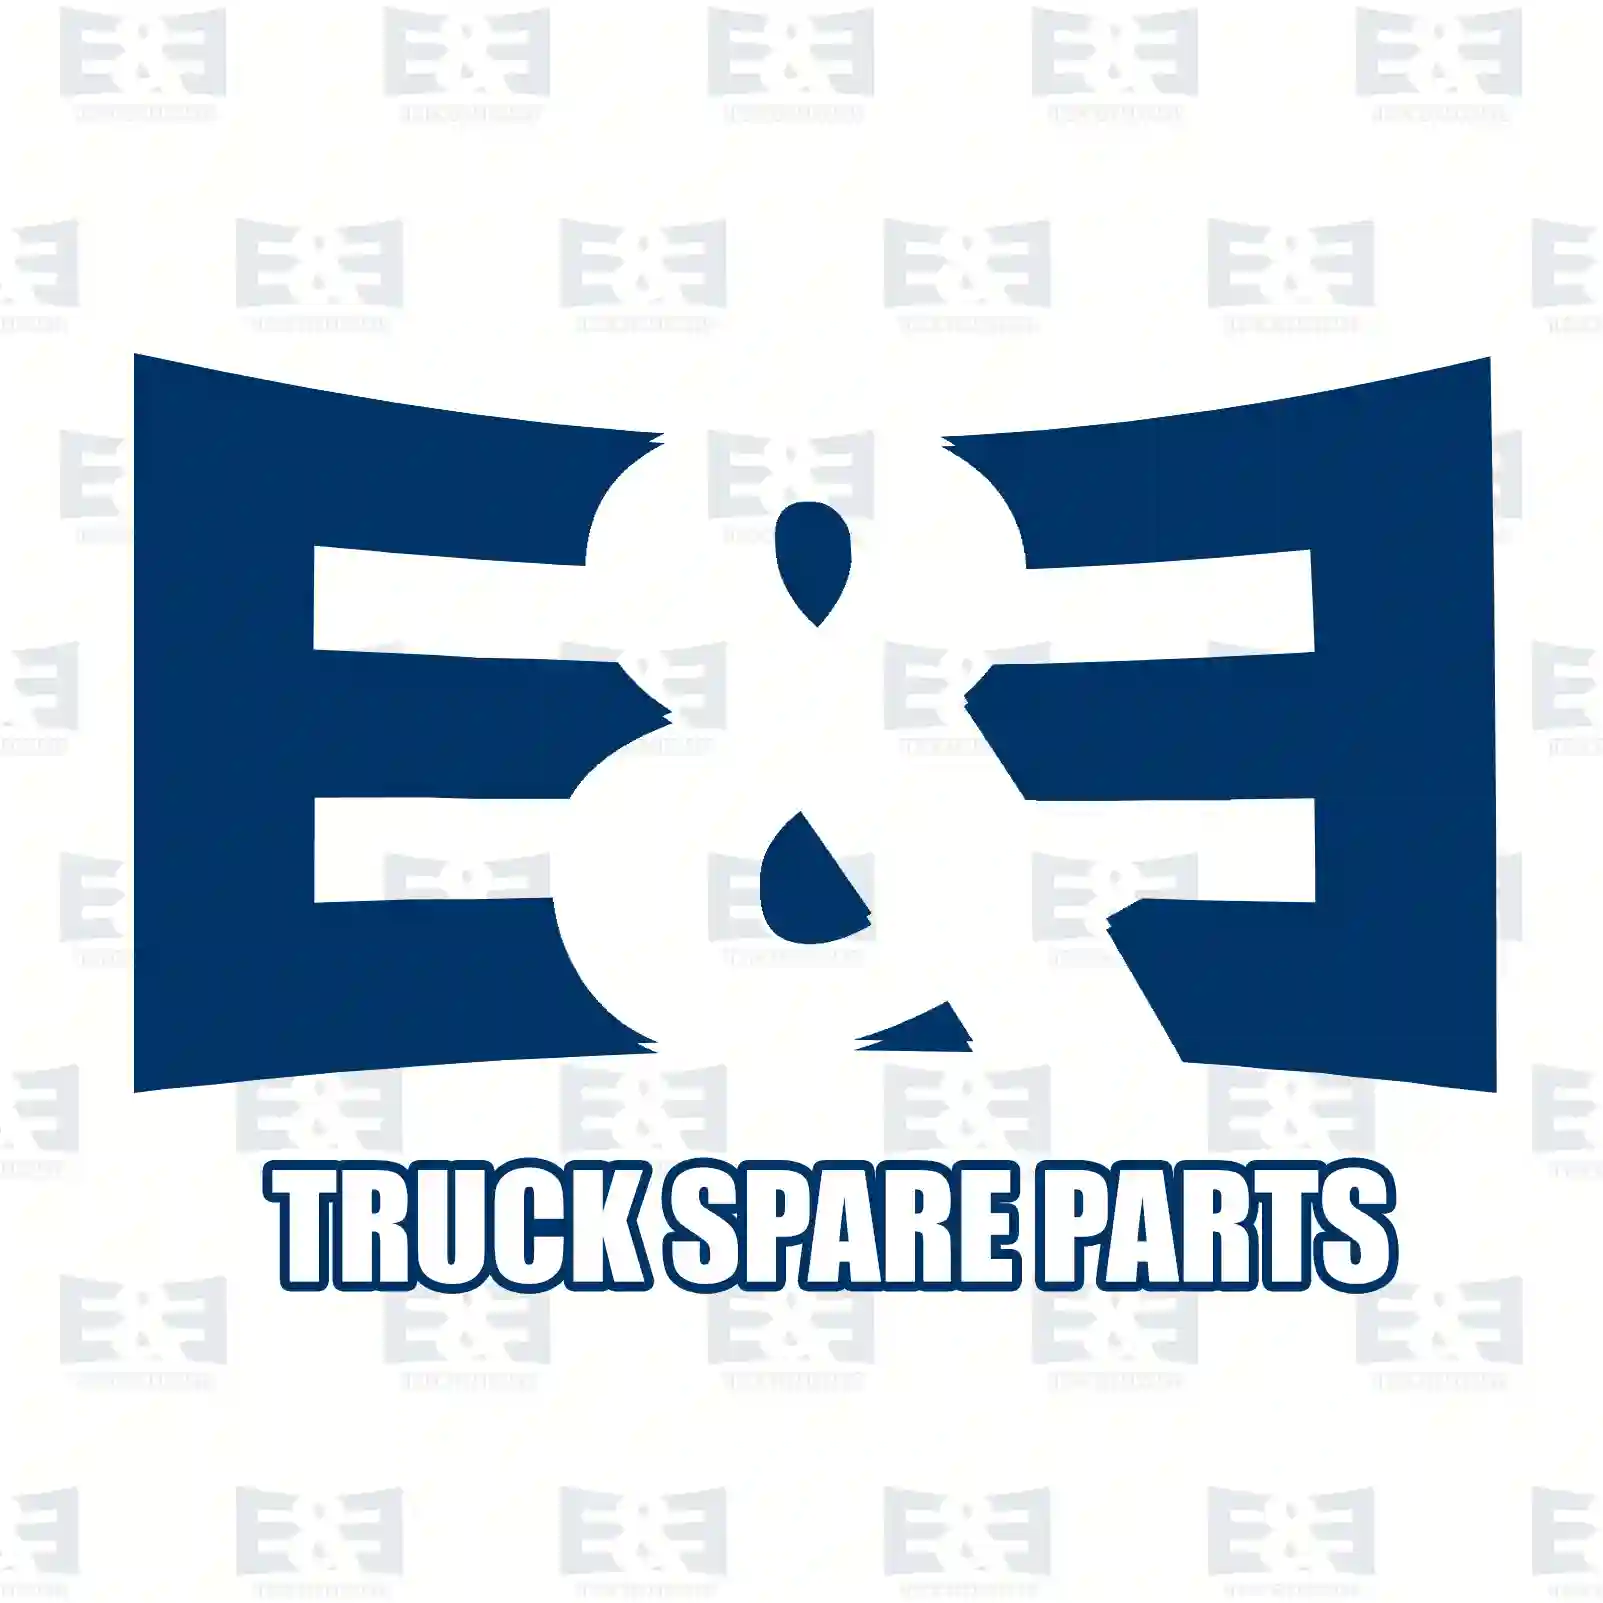 Bleeder valve, 2E2277319, 1770297, 2057206, 2117112, ZG50129-0008 ||  2E2277319 E&E Truck Spare Parts | Truck Spare Parts, Auotomotive Spare Parts Bleeder valve, 2E2277319, 1770297, 2057206, 2117112, ZG50129-0008 ||  2E2277319 E&E Truck Spare Parts | Truck Spare Parts, Auotomotive Spare Parts